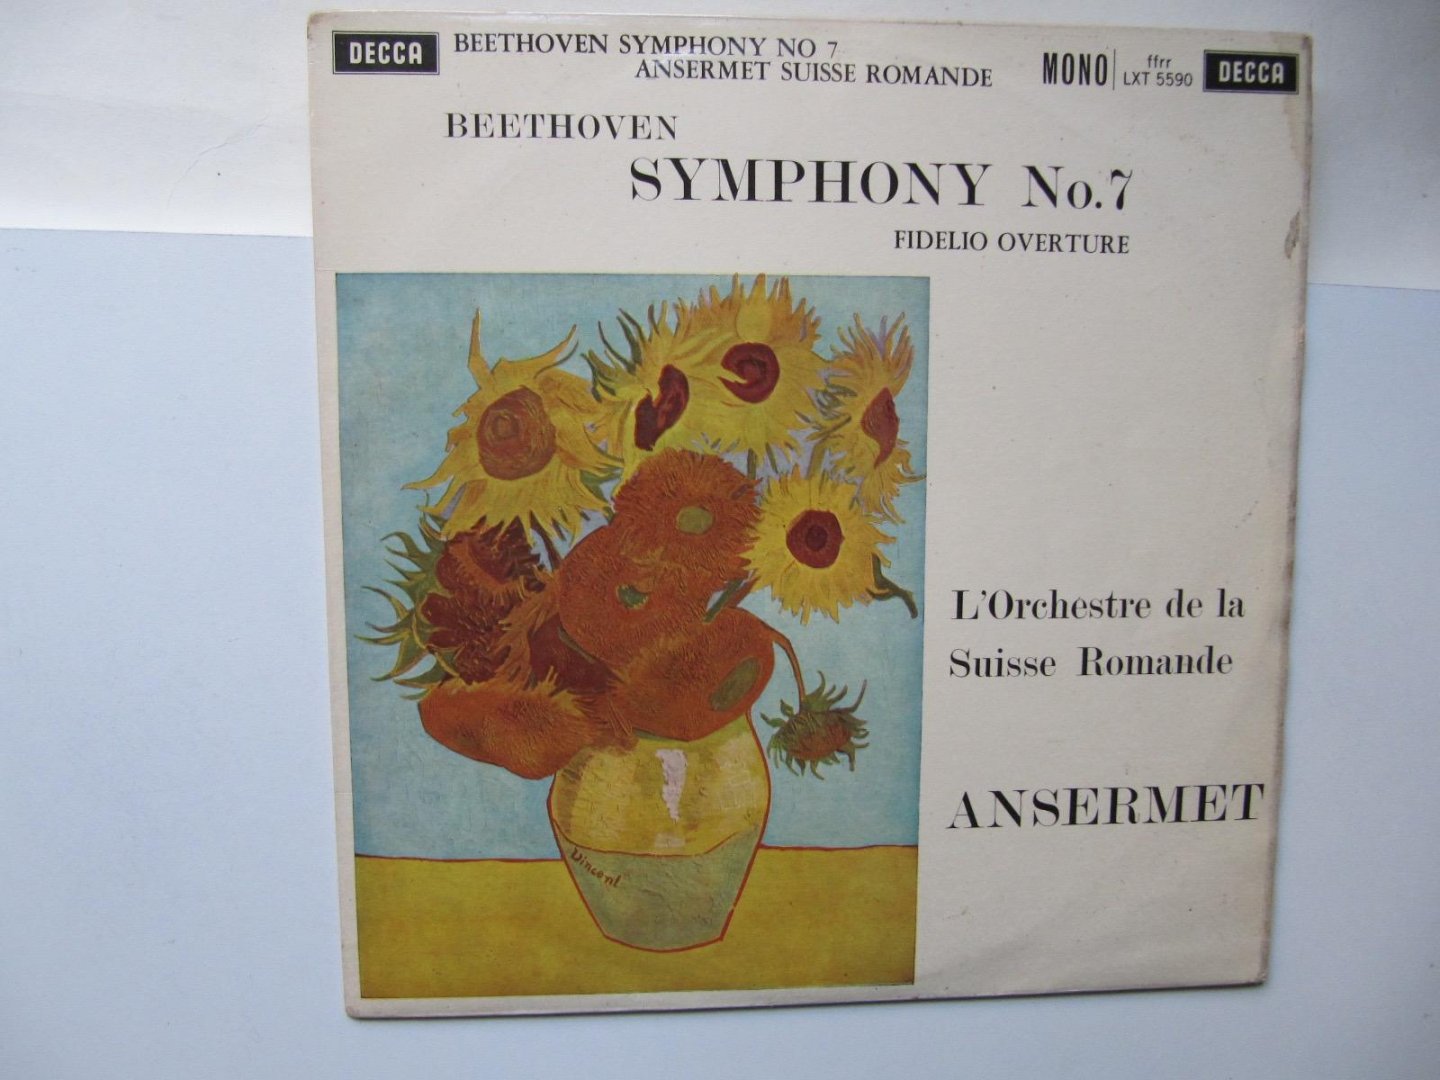 L'Orchestre de la Suisse Romande ANSERMET - Beethoven Symphony No.7 -mono - 1960